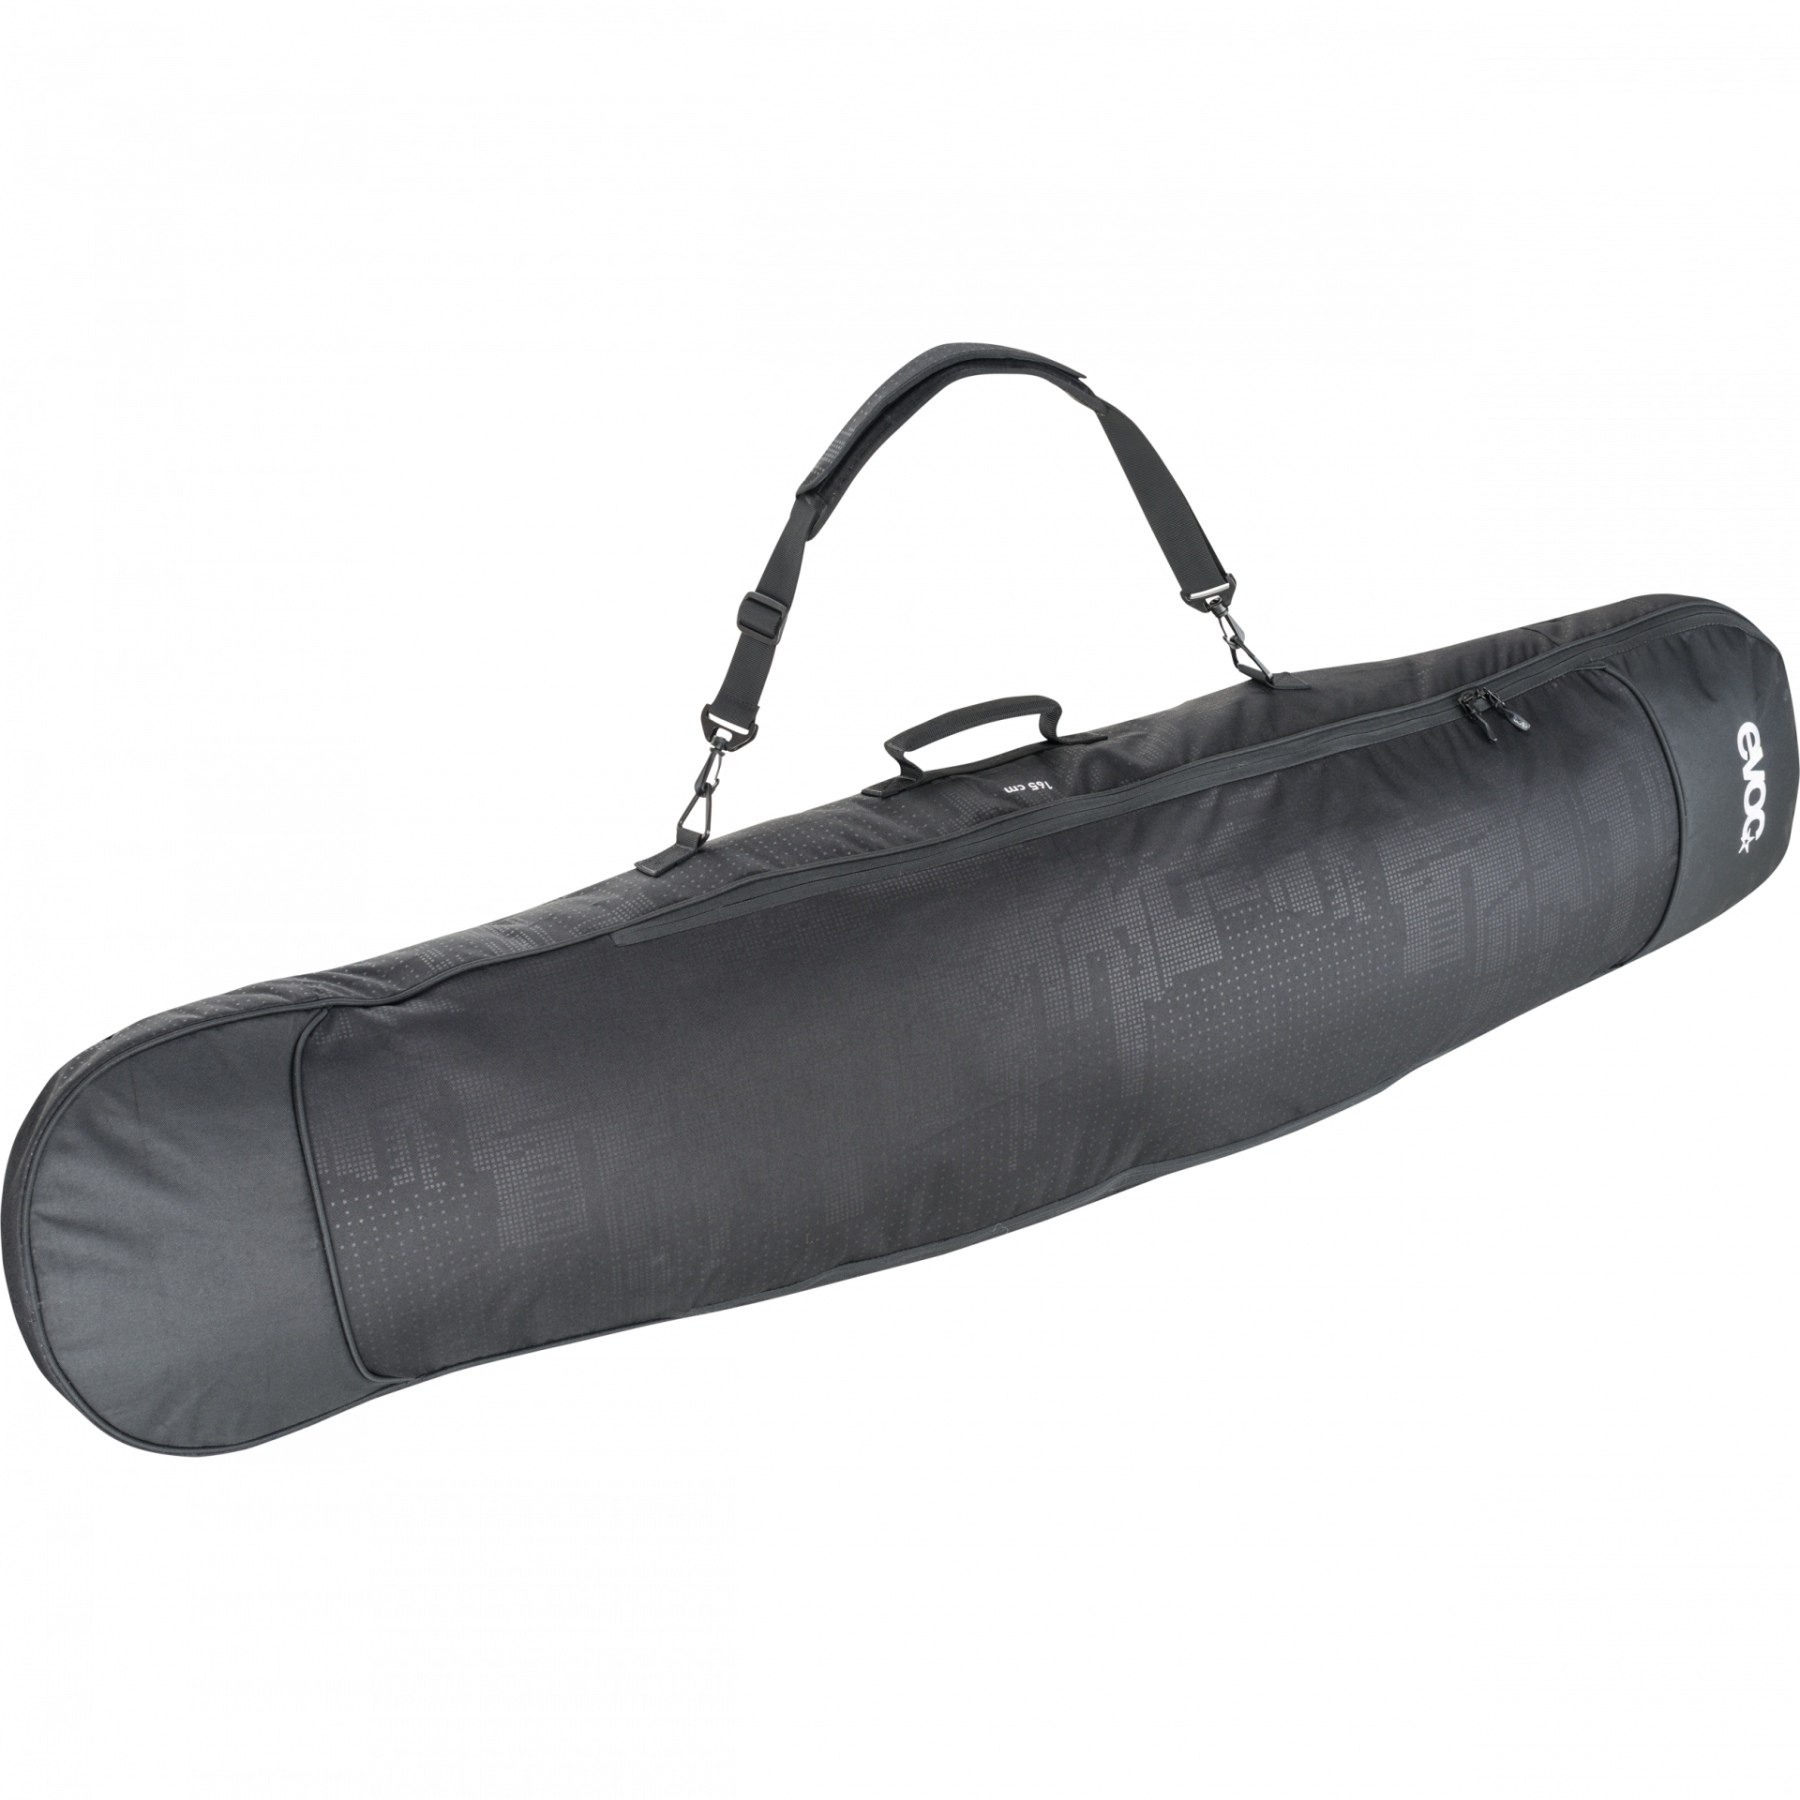 Produktbild von EVOC BOARD BAG 50L - Snowboard Reisetasche 165 cm - Black